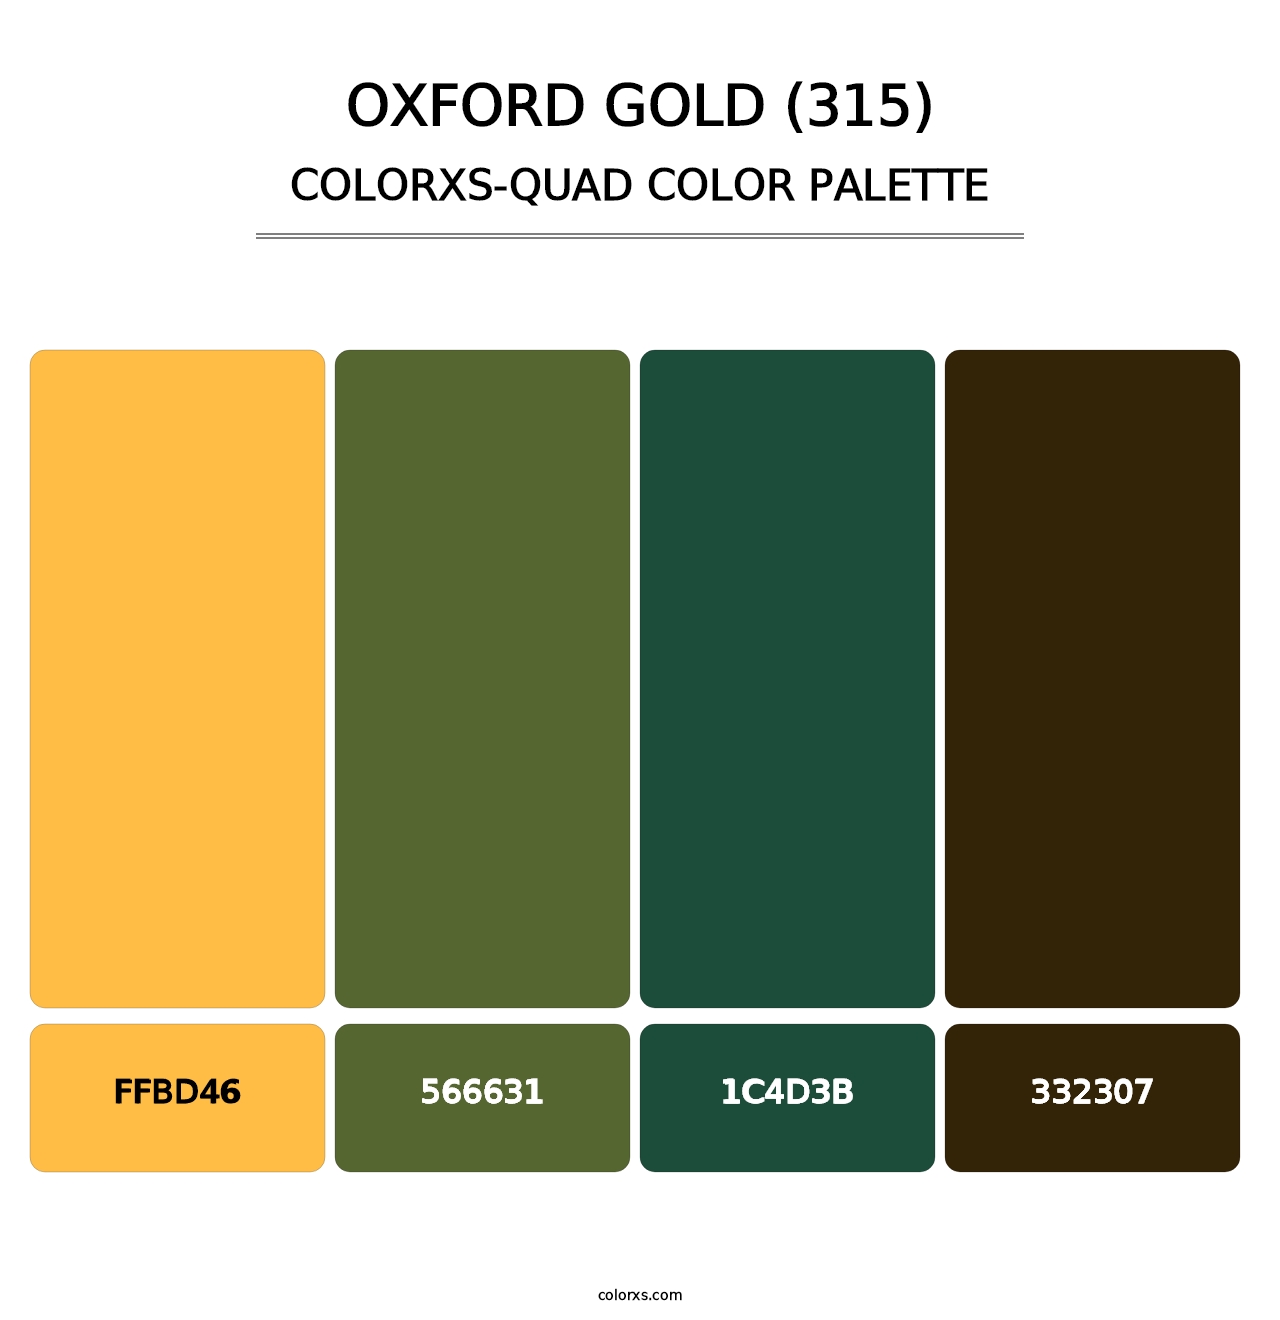 Oxford Gold (315) - Colorxs Quad Palette